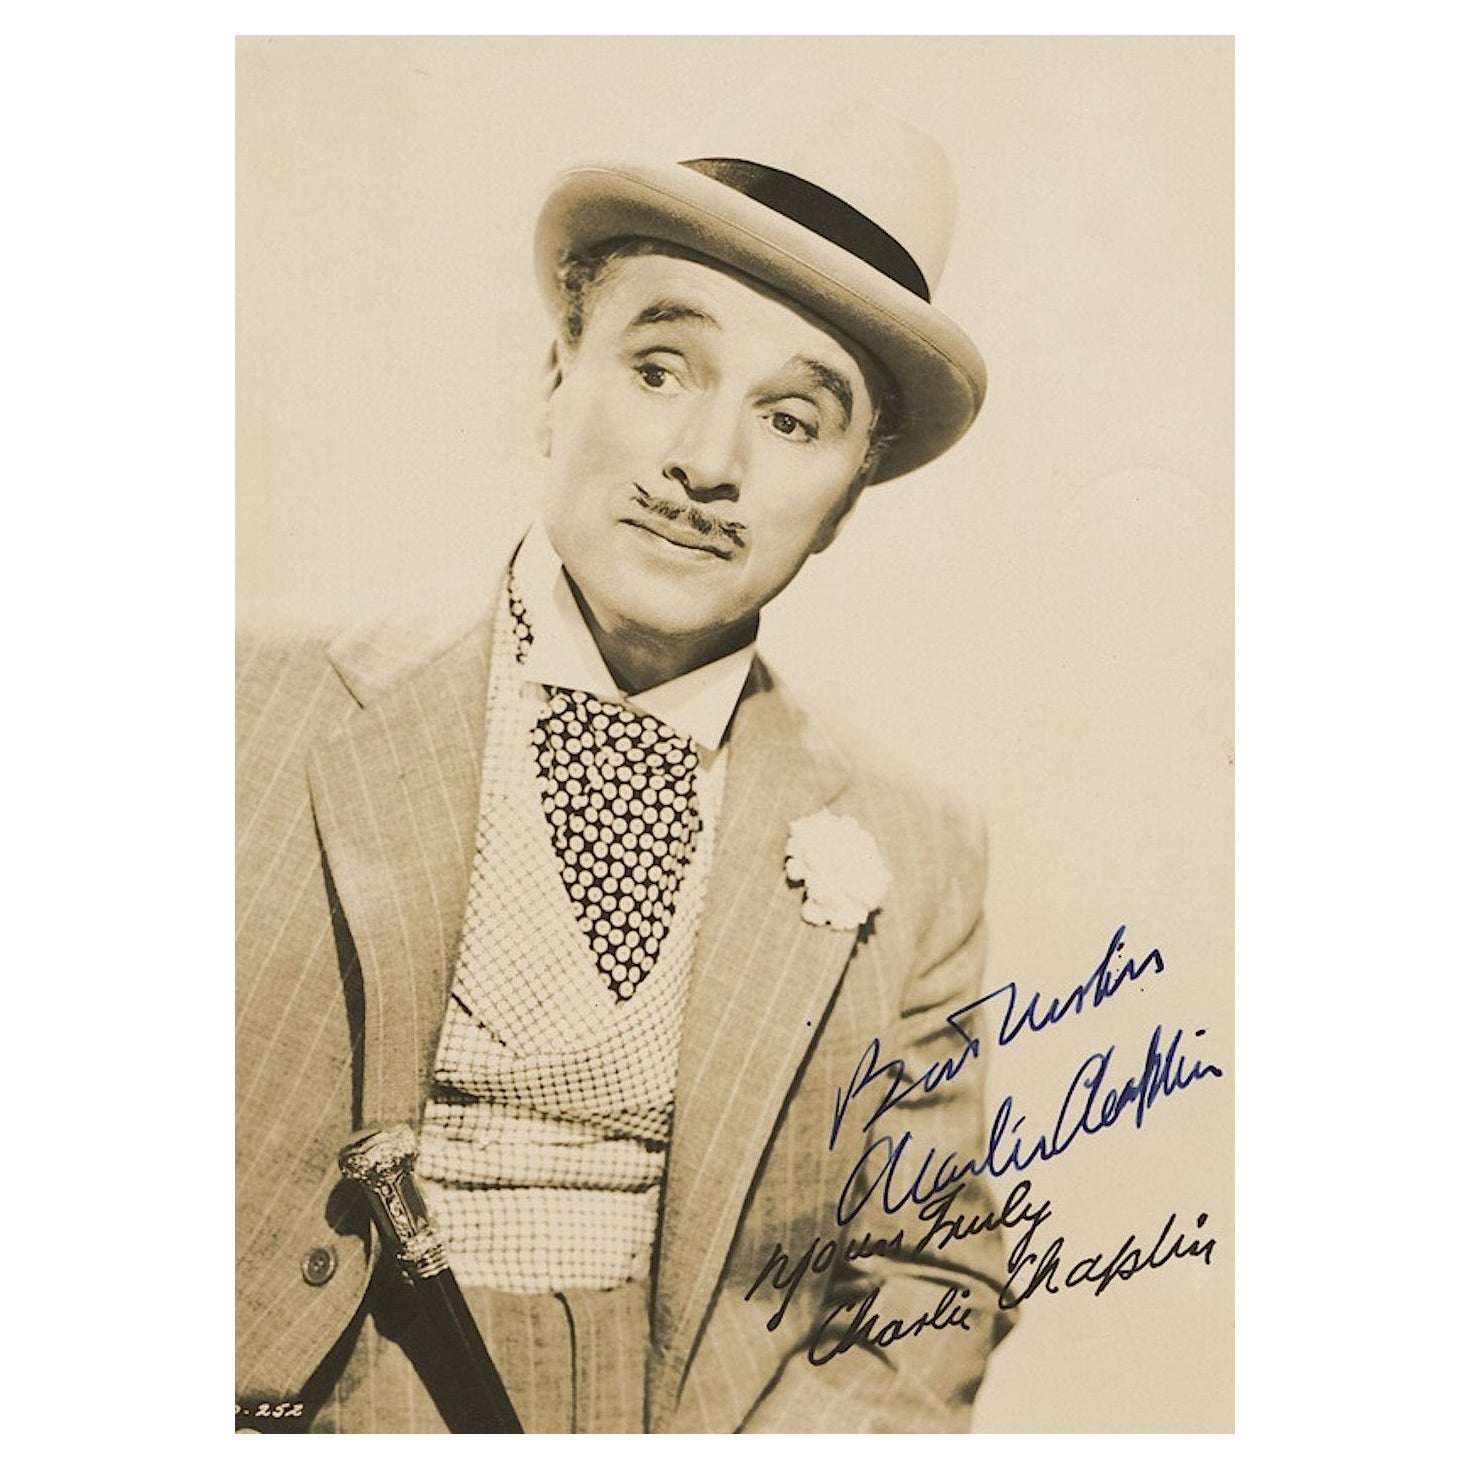 Charlie Chaplin Signed Photograph as Monsieur Verdoux For Sale